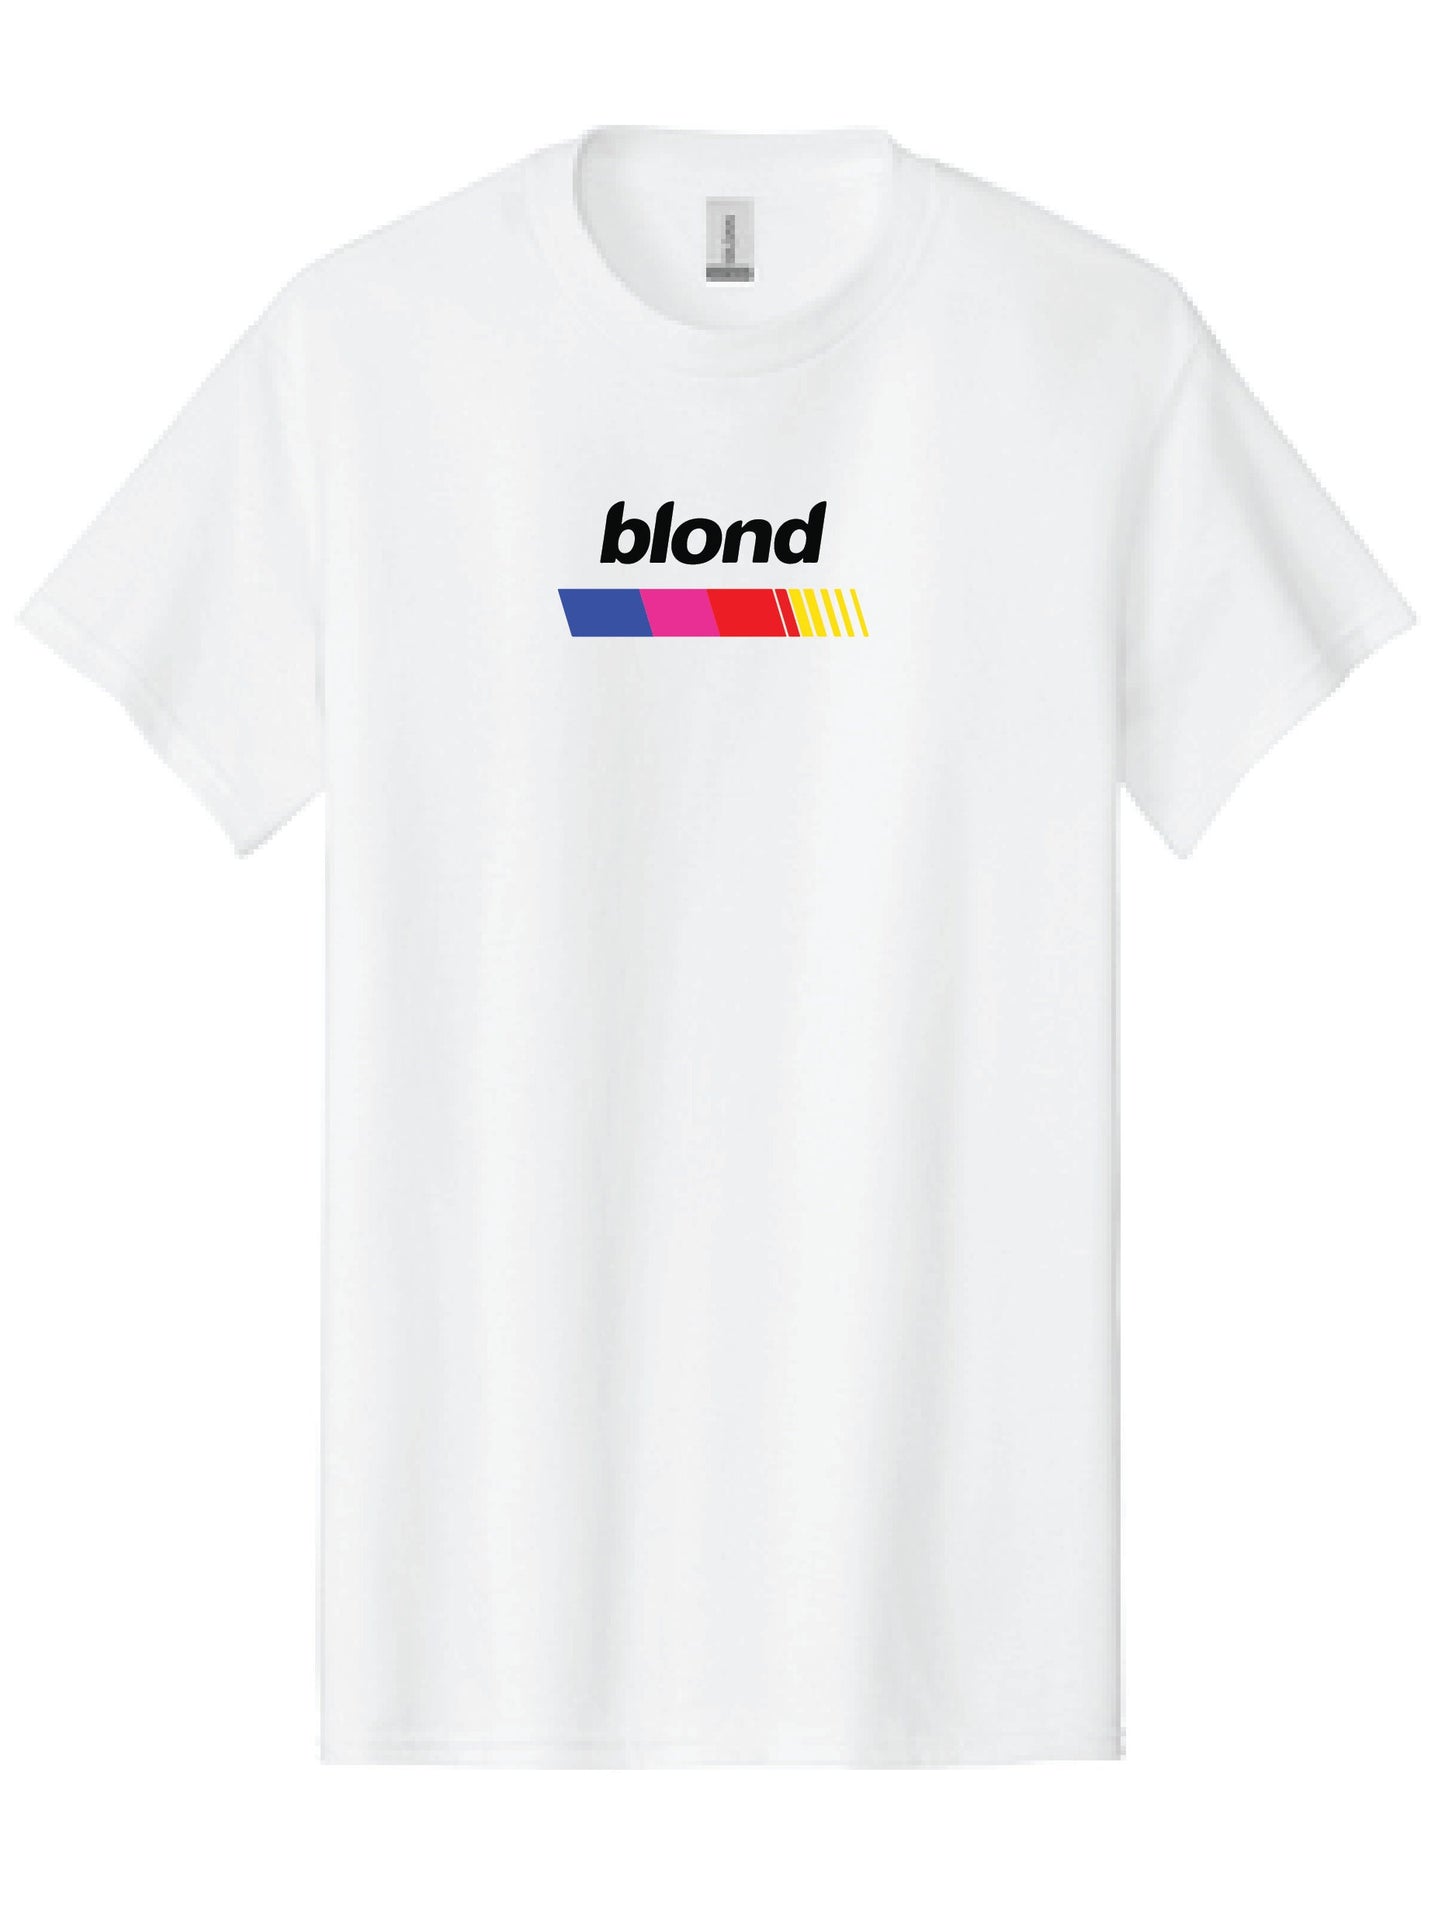 Frank Ocean T-Shirt | Blond Frank Ocean T-Shirt | Frank Ocean Blond | Music T-Shirt | Gift | Blond Album | Music T-shirt Gift